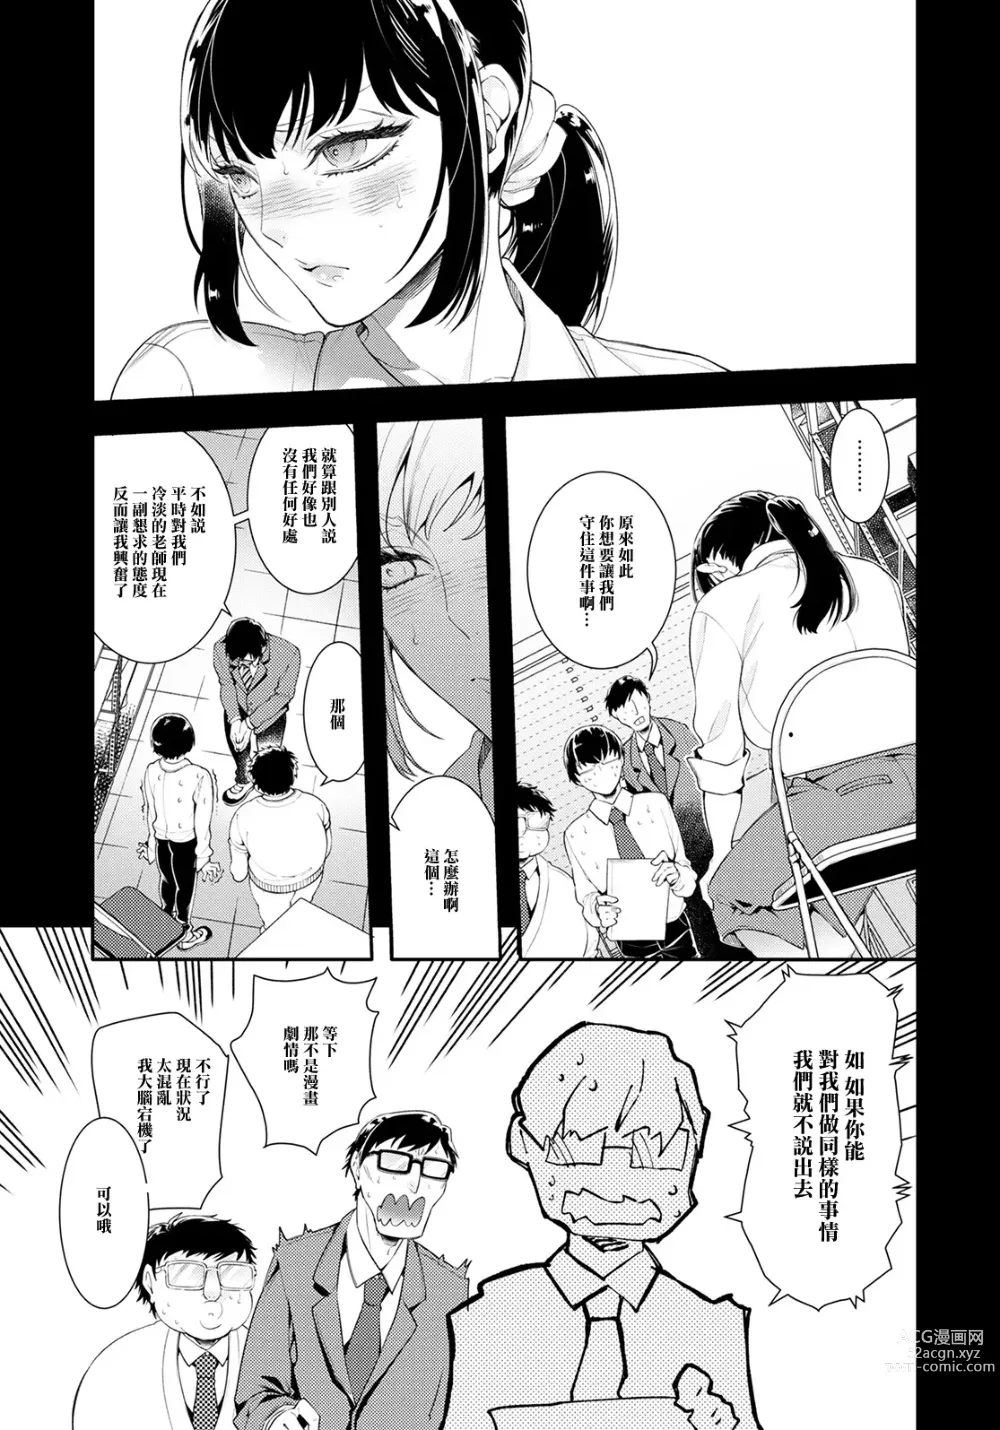 Page 7 of manga Jokyoushi Himitsu no Seikatsu Shidou